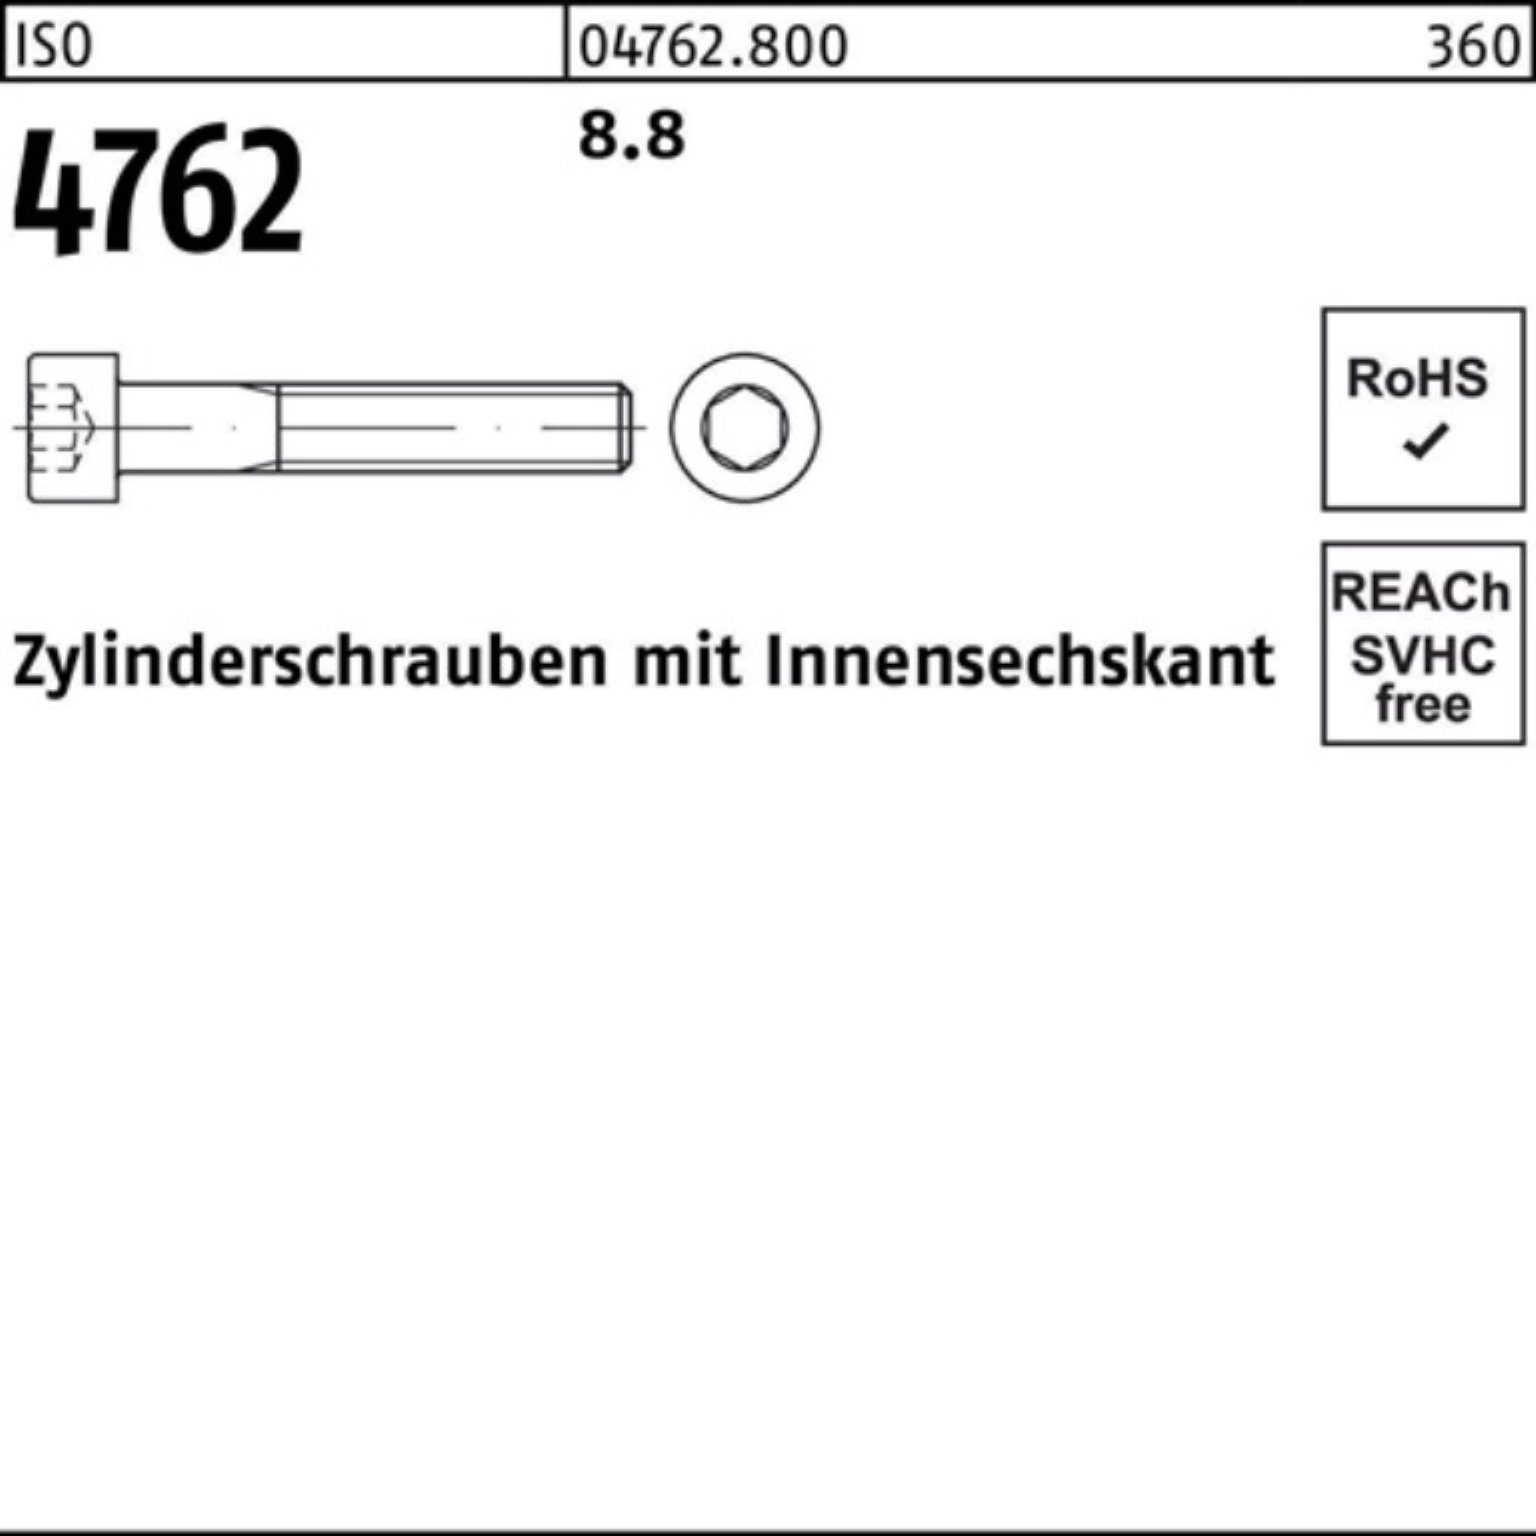 120 1 I ISO Zylinderschraube 8.8 Zylinderschraube Reyher Stück Pack M30x 4762 100er Innen-6kt